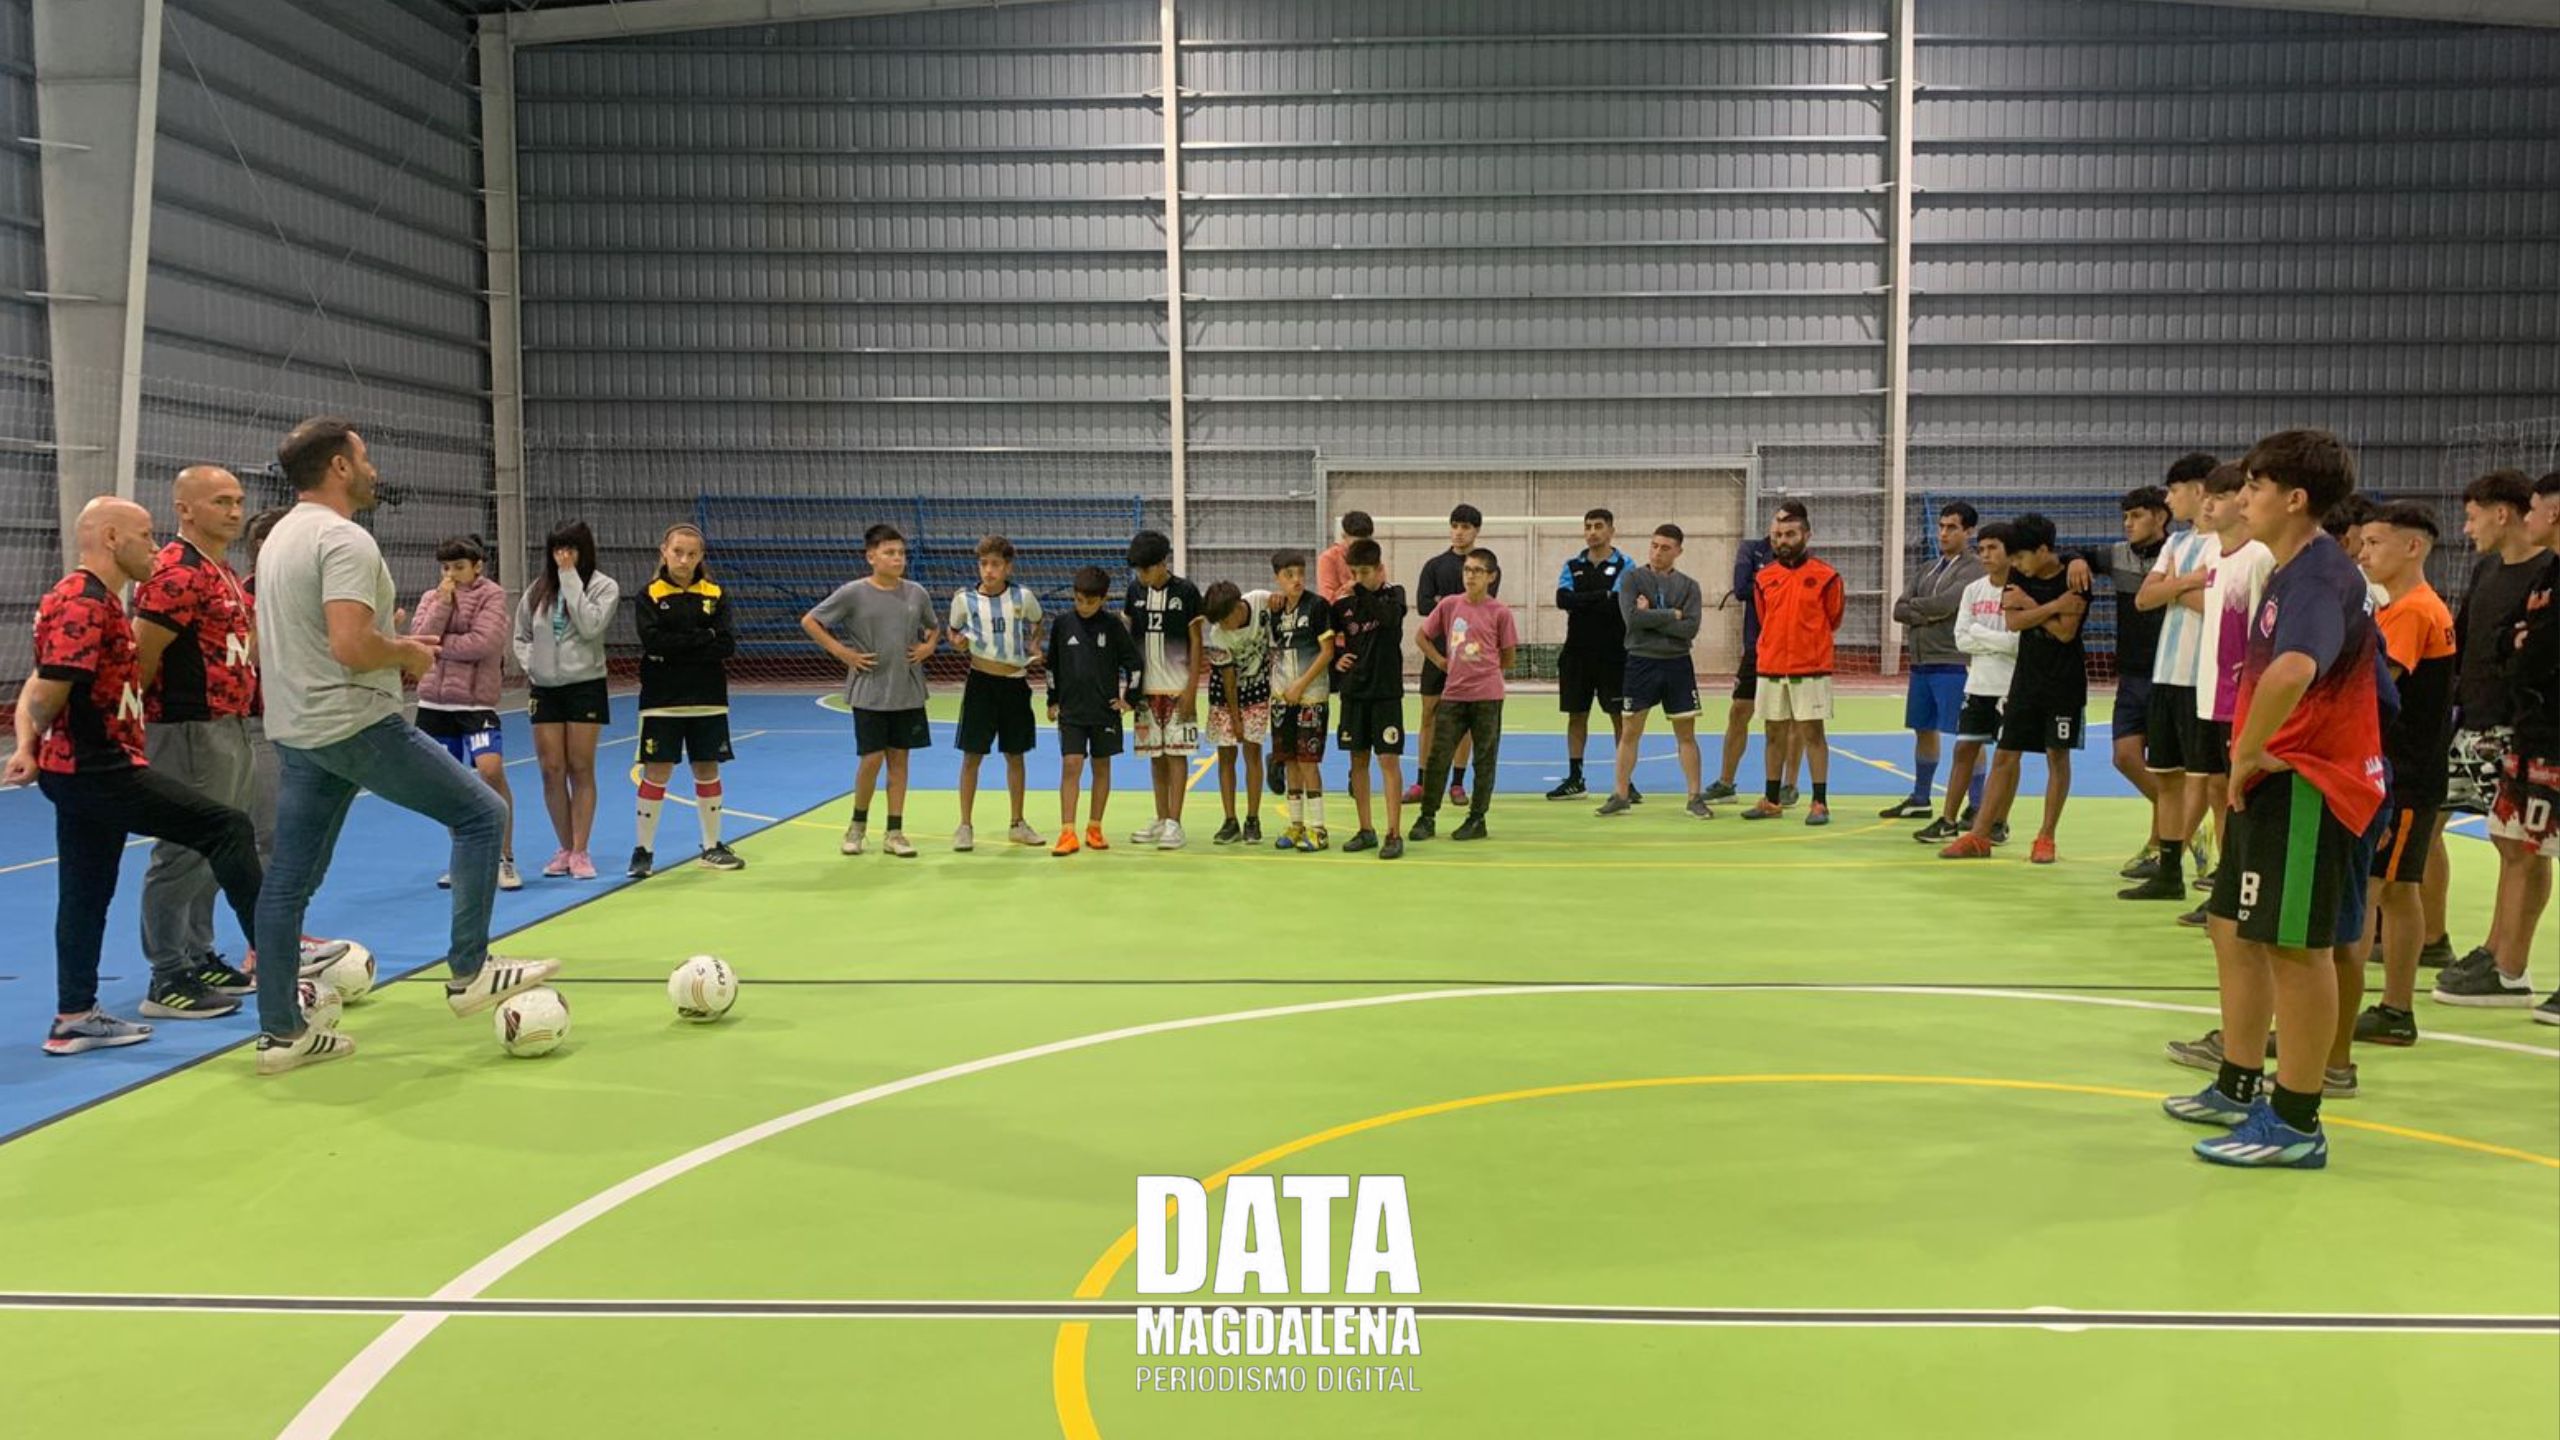 ⚽ Nueva disciplina deportiva en la Escuela Municipal: Futsal para jóvenes y adultos